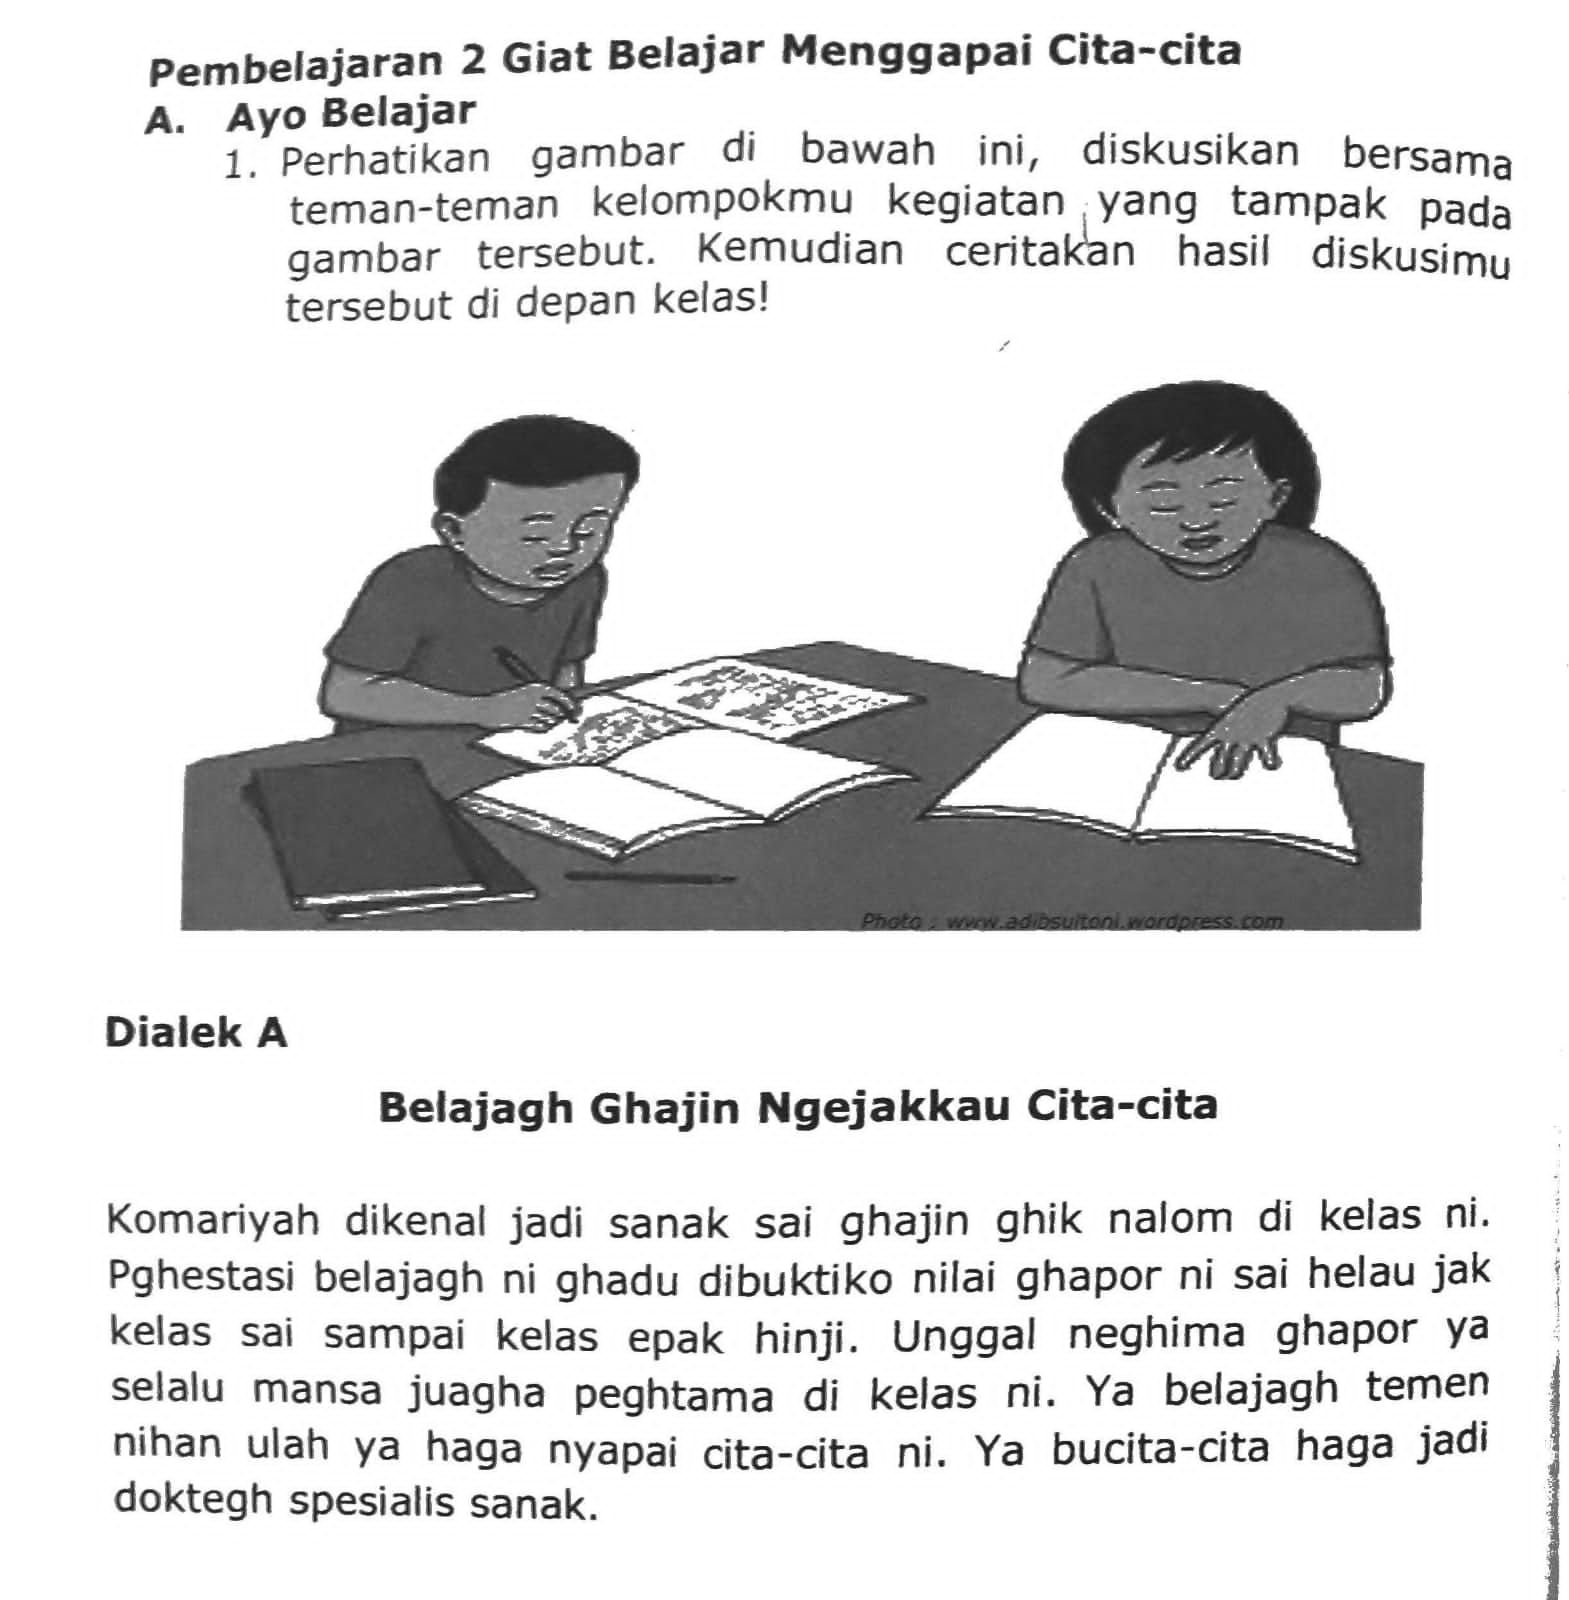 Kunci Jawaban Bahasa Lampung Tema 7 Kelas 4 Sd Halaman 54 55 56 57 Aksara Lampung Metro Lampung News